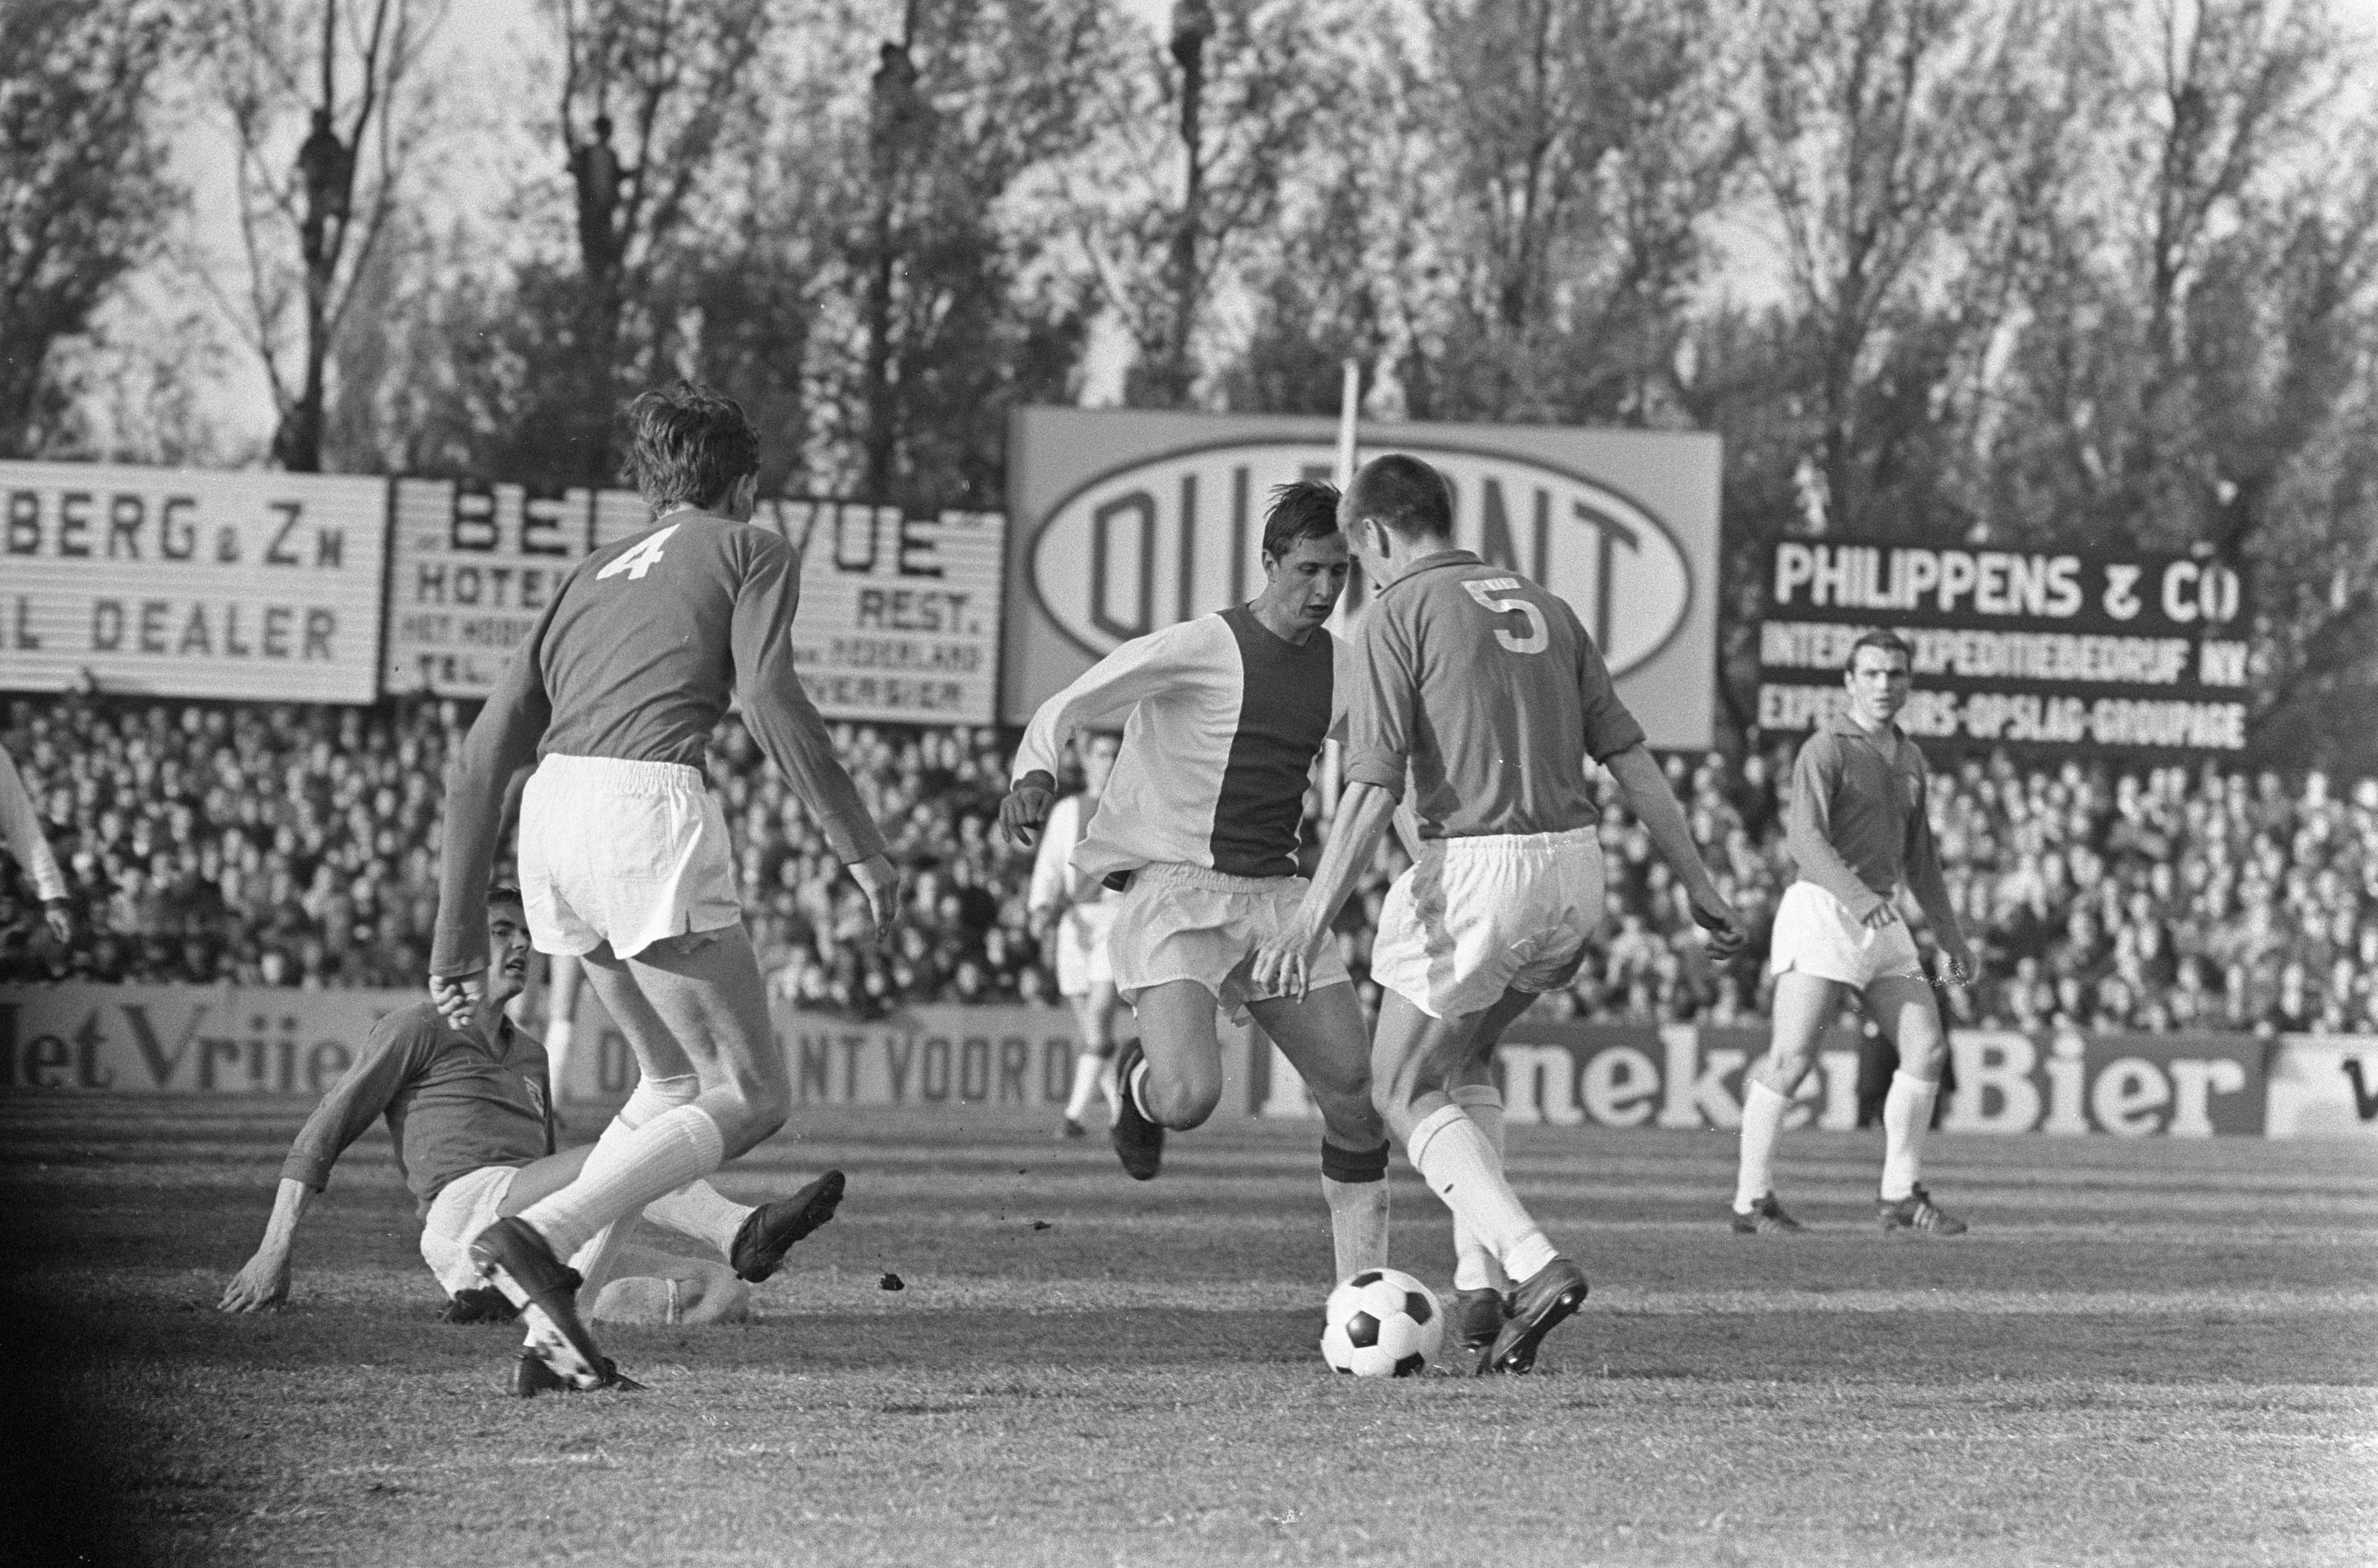 Bijdrage Werkwijze Eekhoorn Bestand:Beker. DFC tegen Ajax 0-1, Johan Cruijff (Ajax) in duel met Jac  Valk (nummer 4 …, Bestanddeelnr 920-3285.jpg - Wikipedia